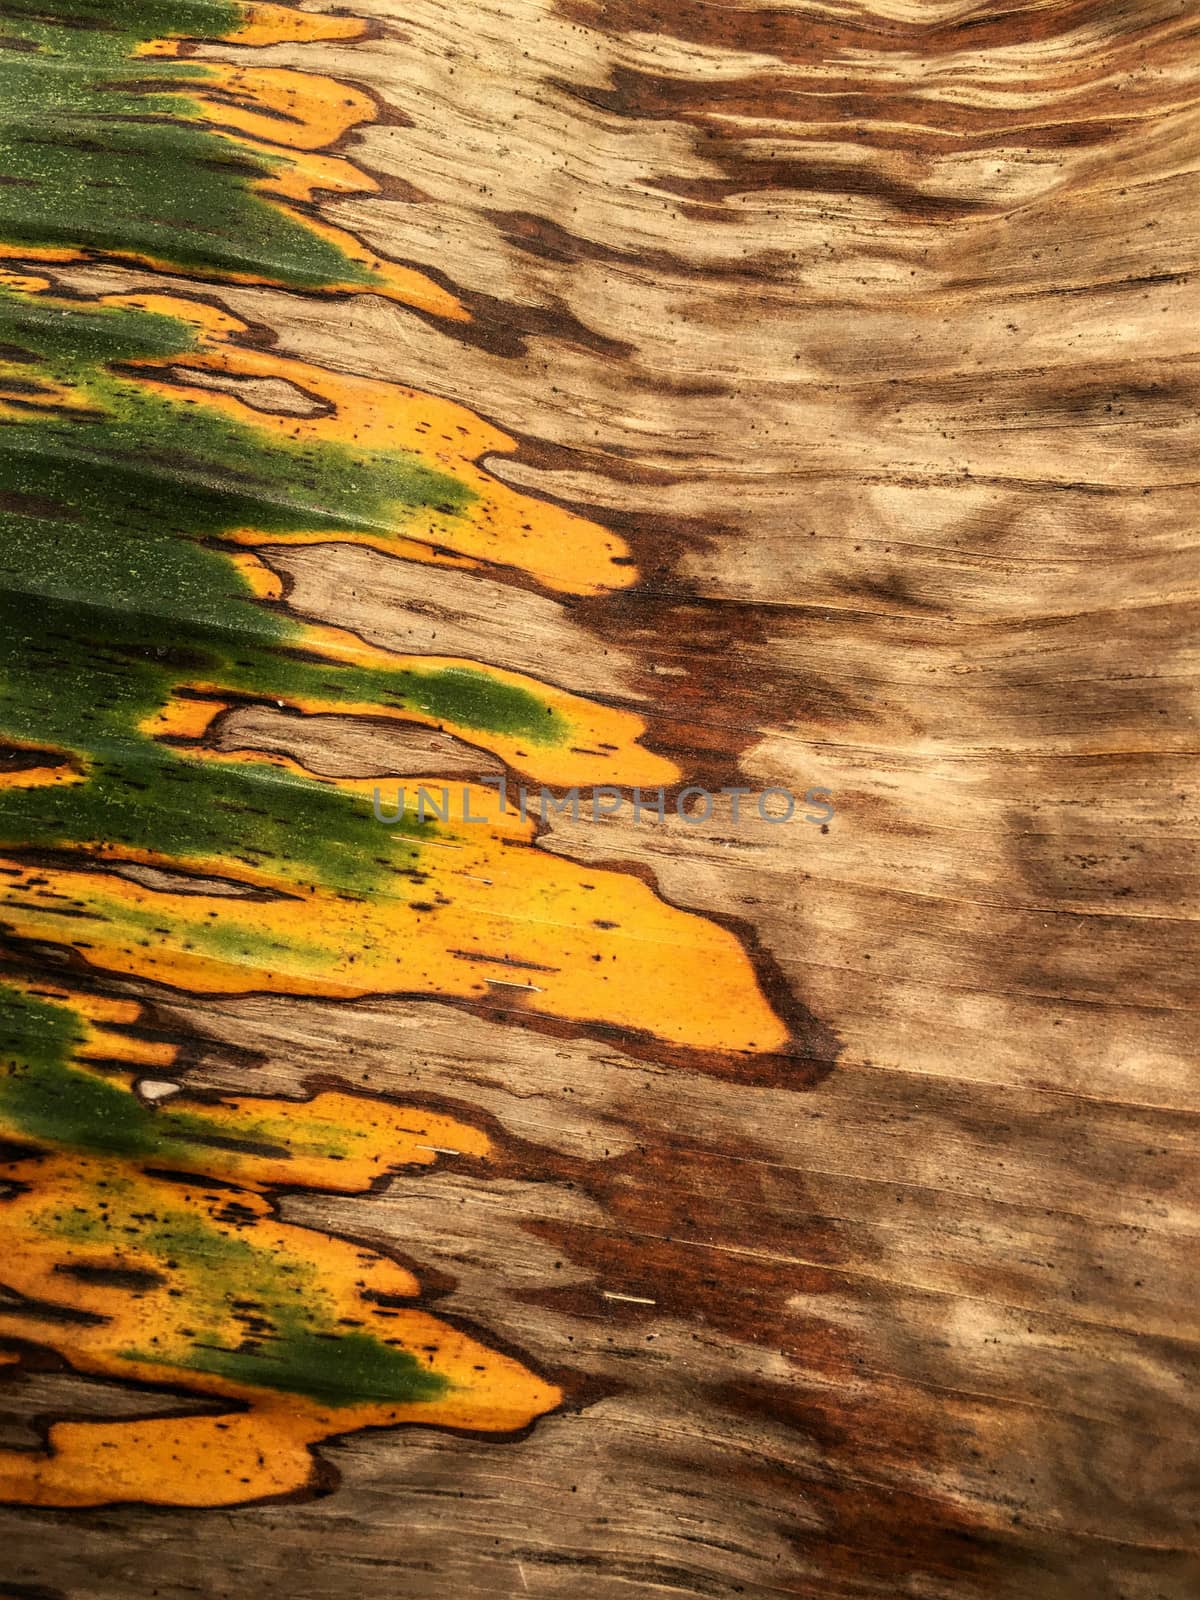 Texture on banana leaf from banana tree.